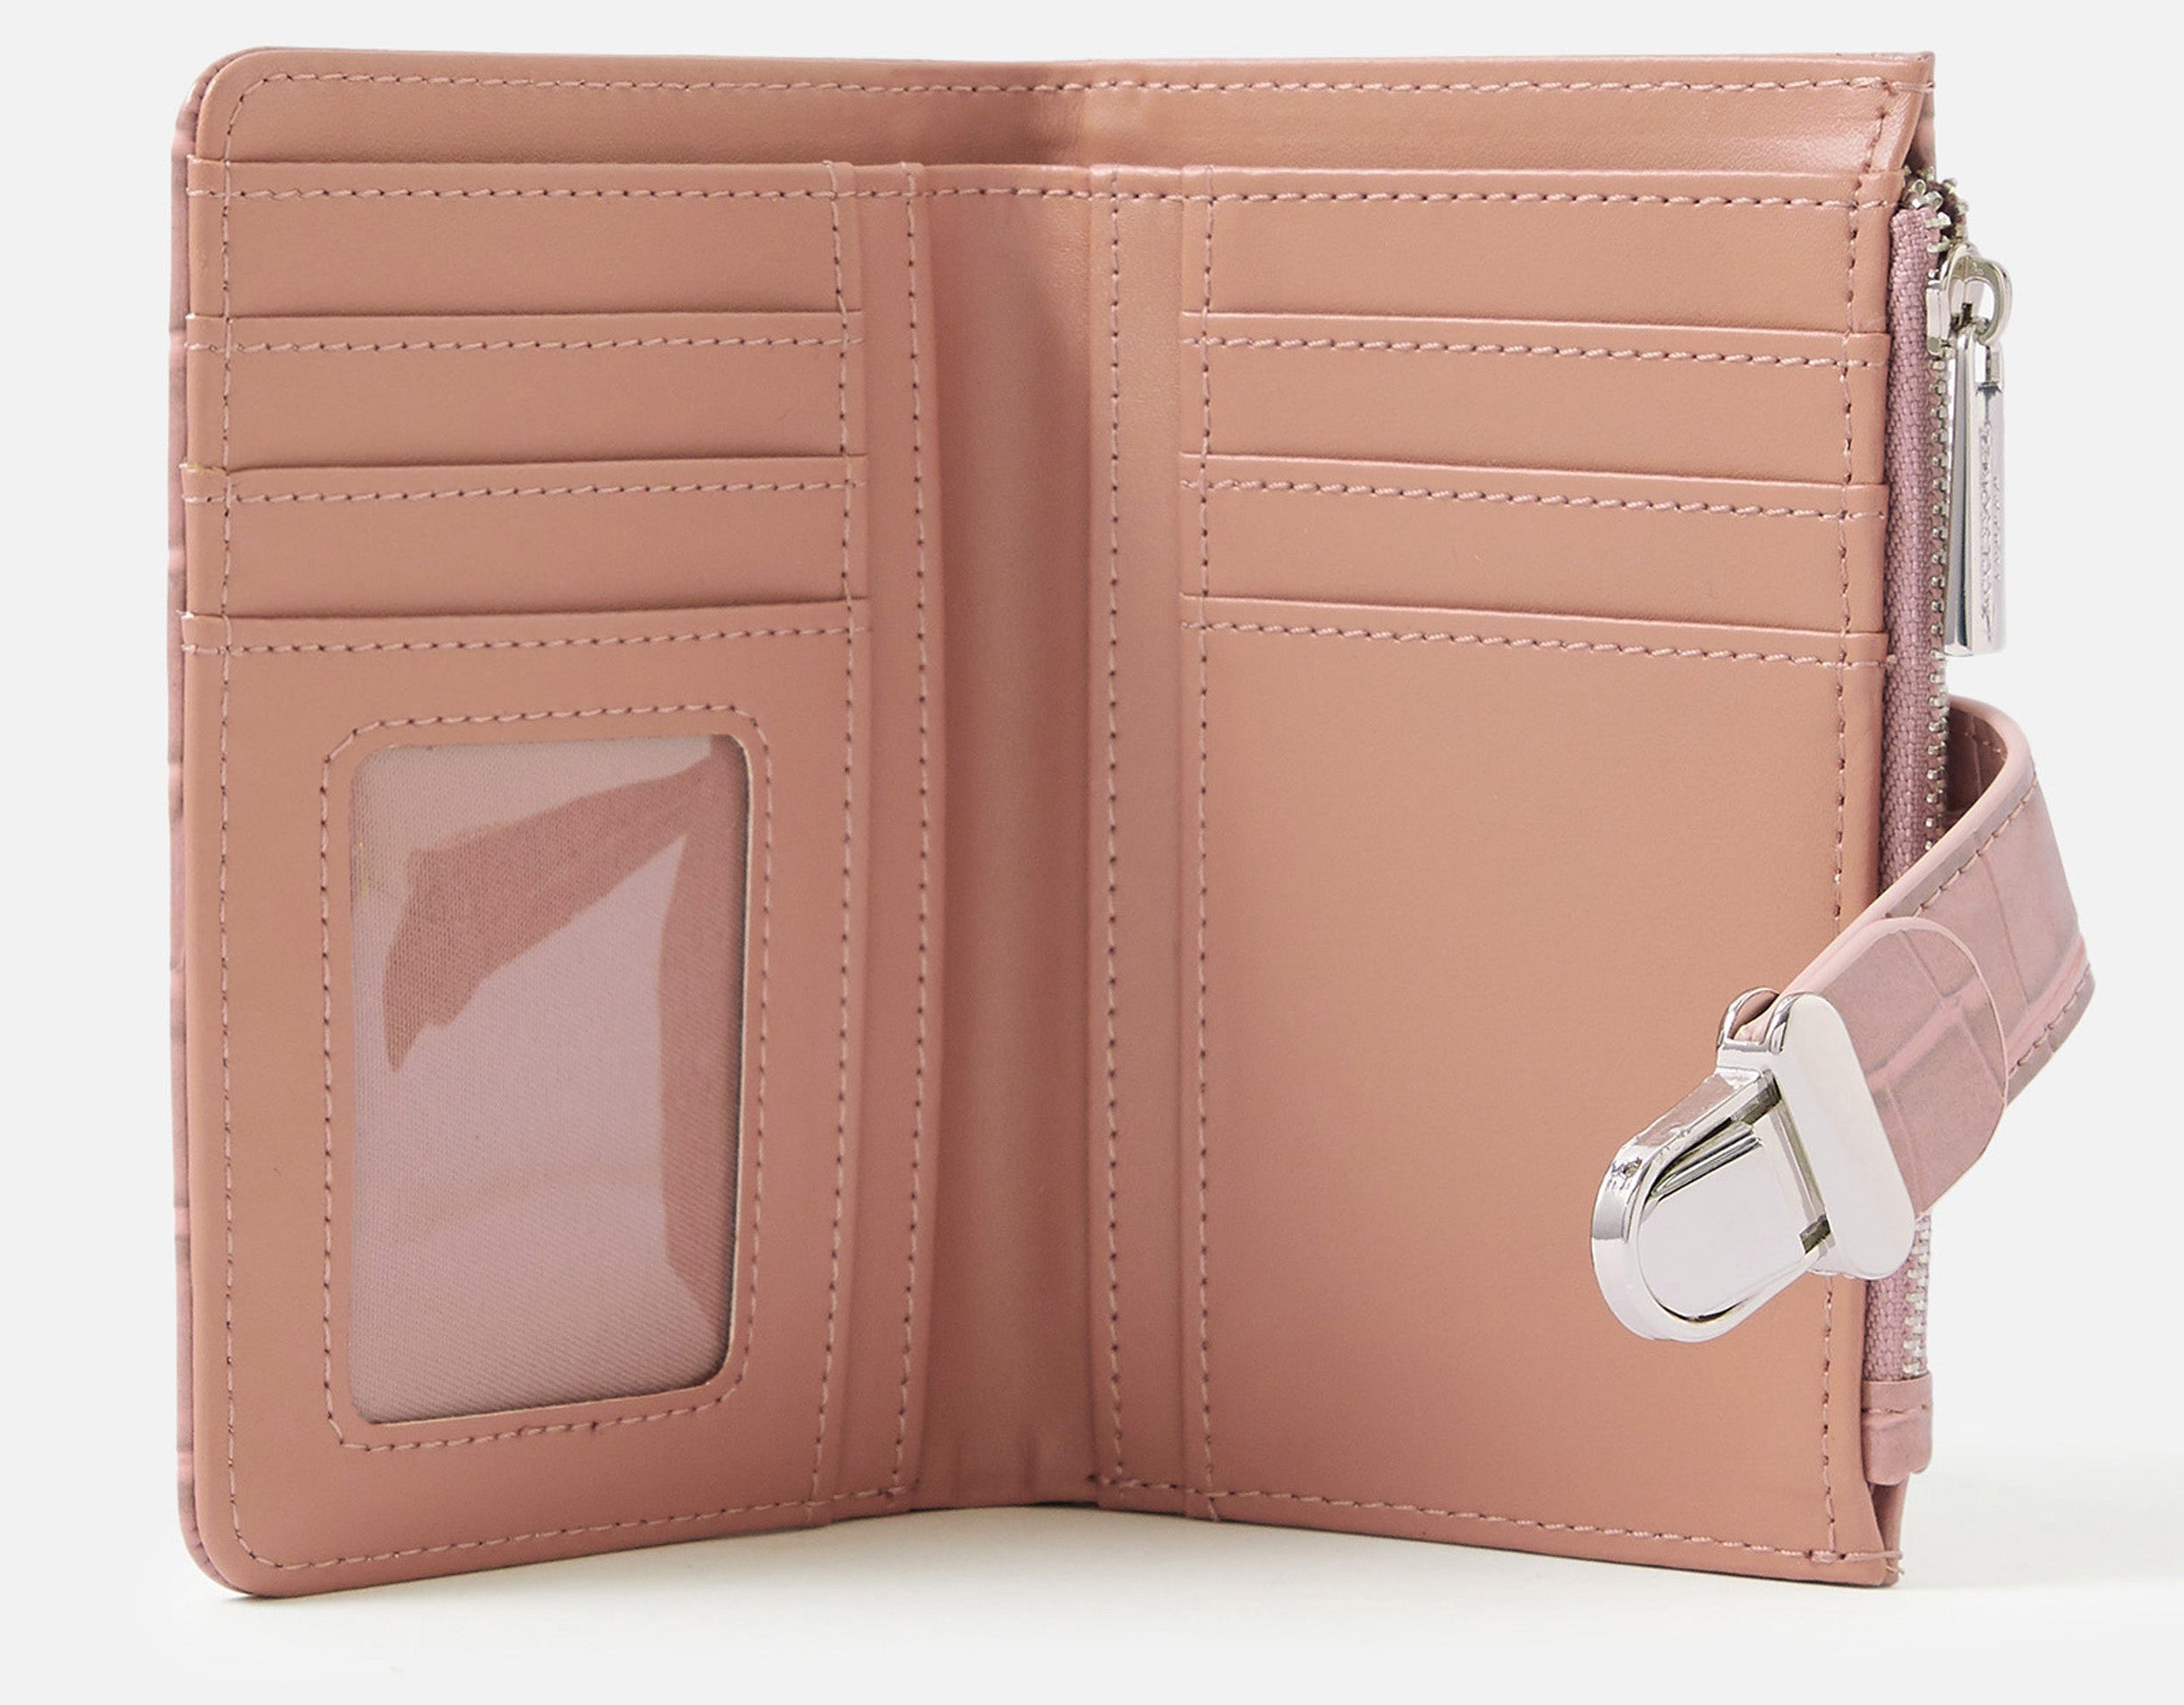 Accessorize London women's Pink Croc Pushlock Wallet Purse